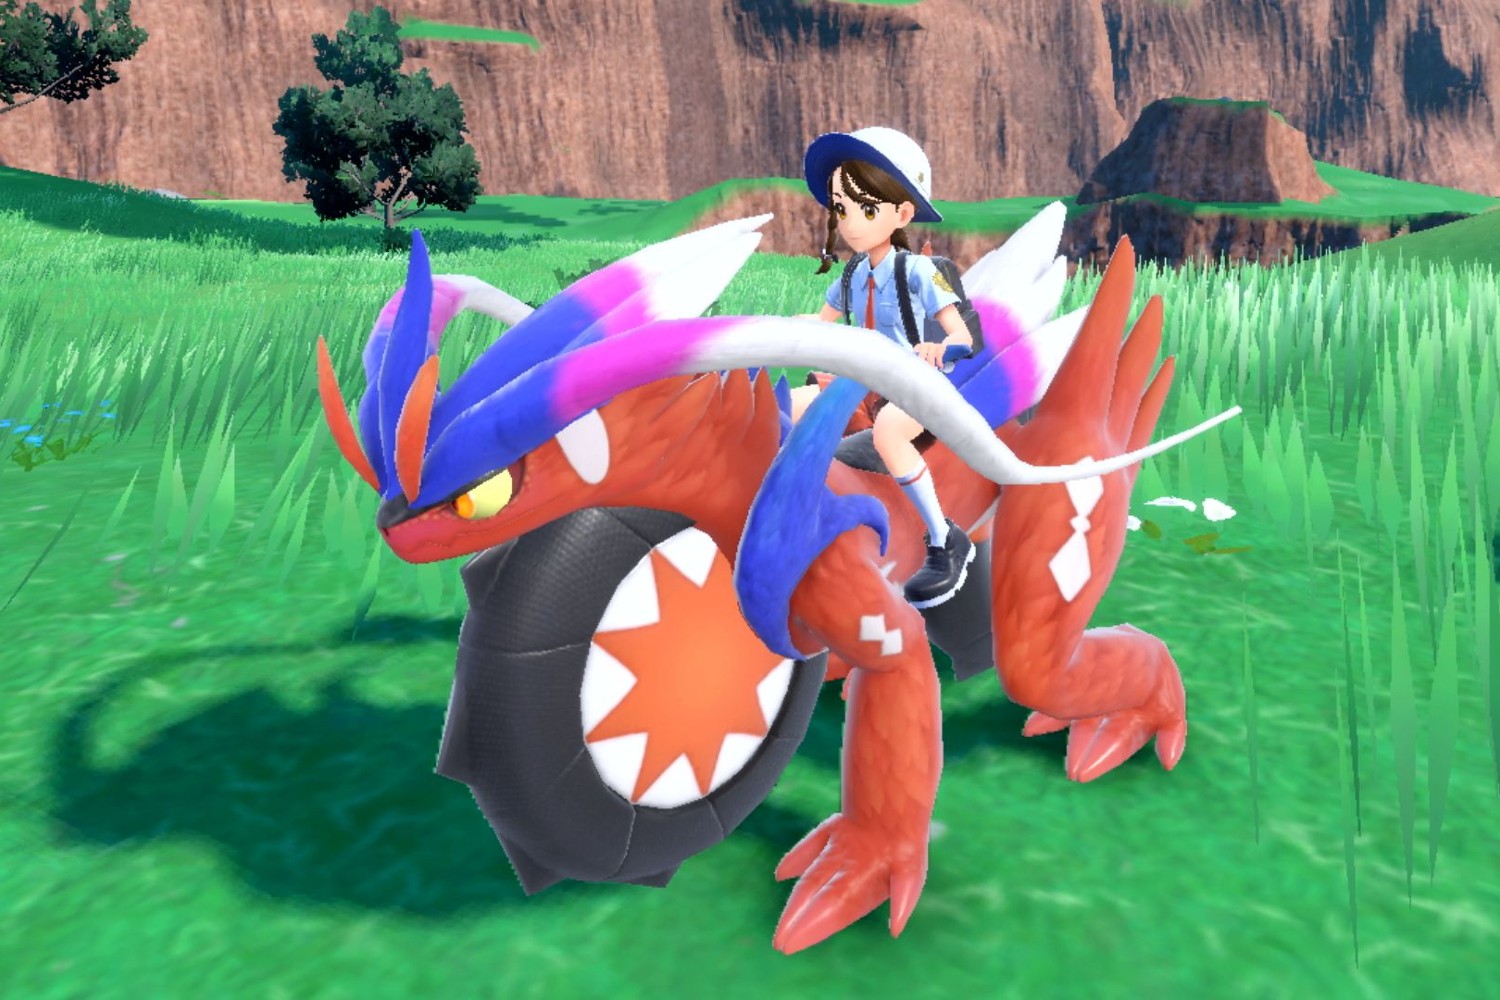 Pokémon Scarlet & Violet DLC reveals round-up from Pokémon Presents